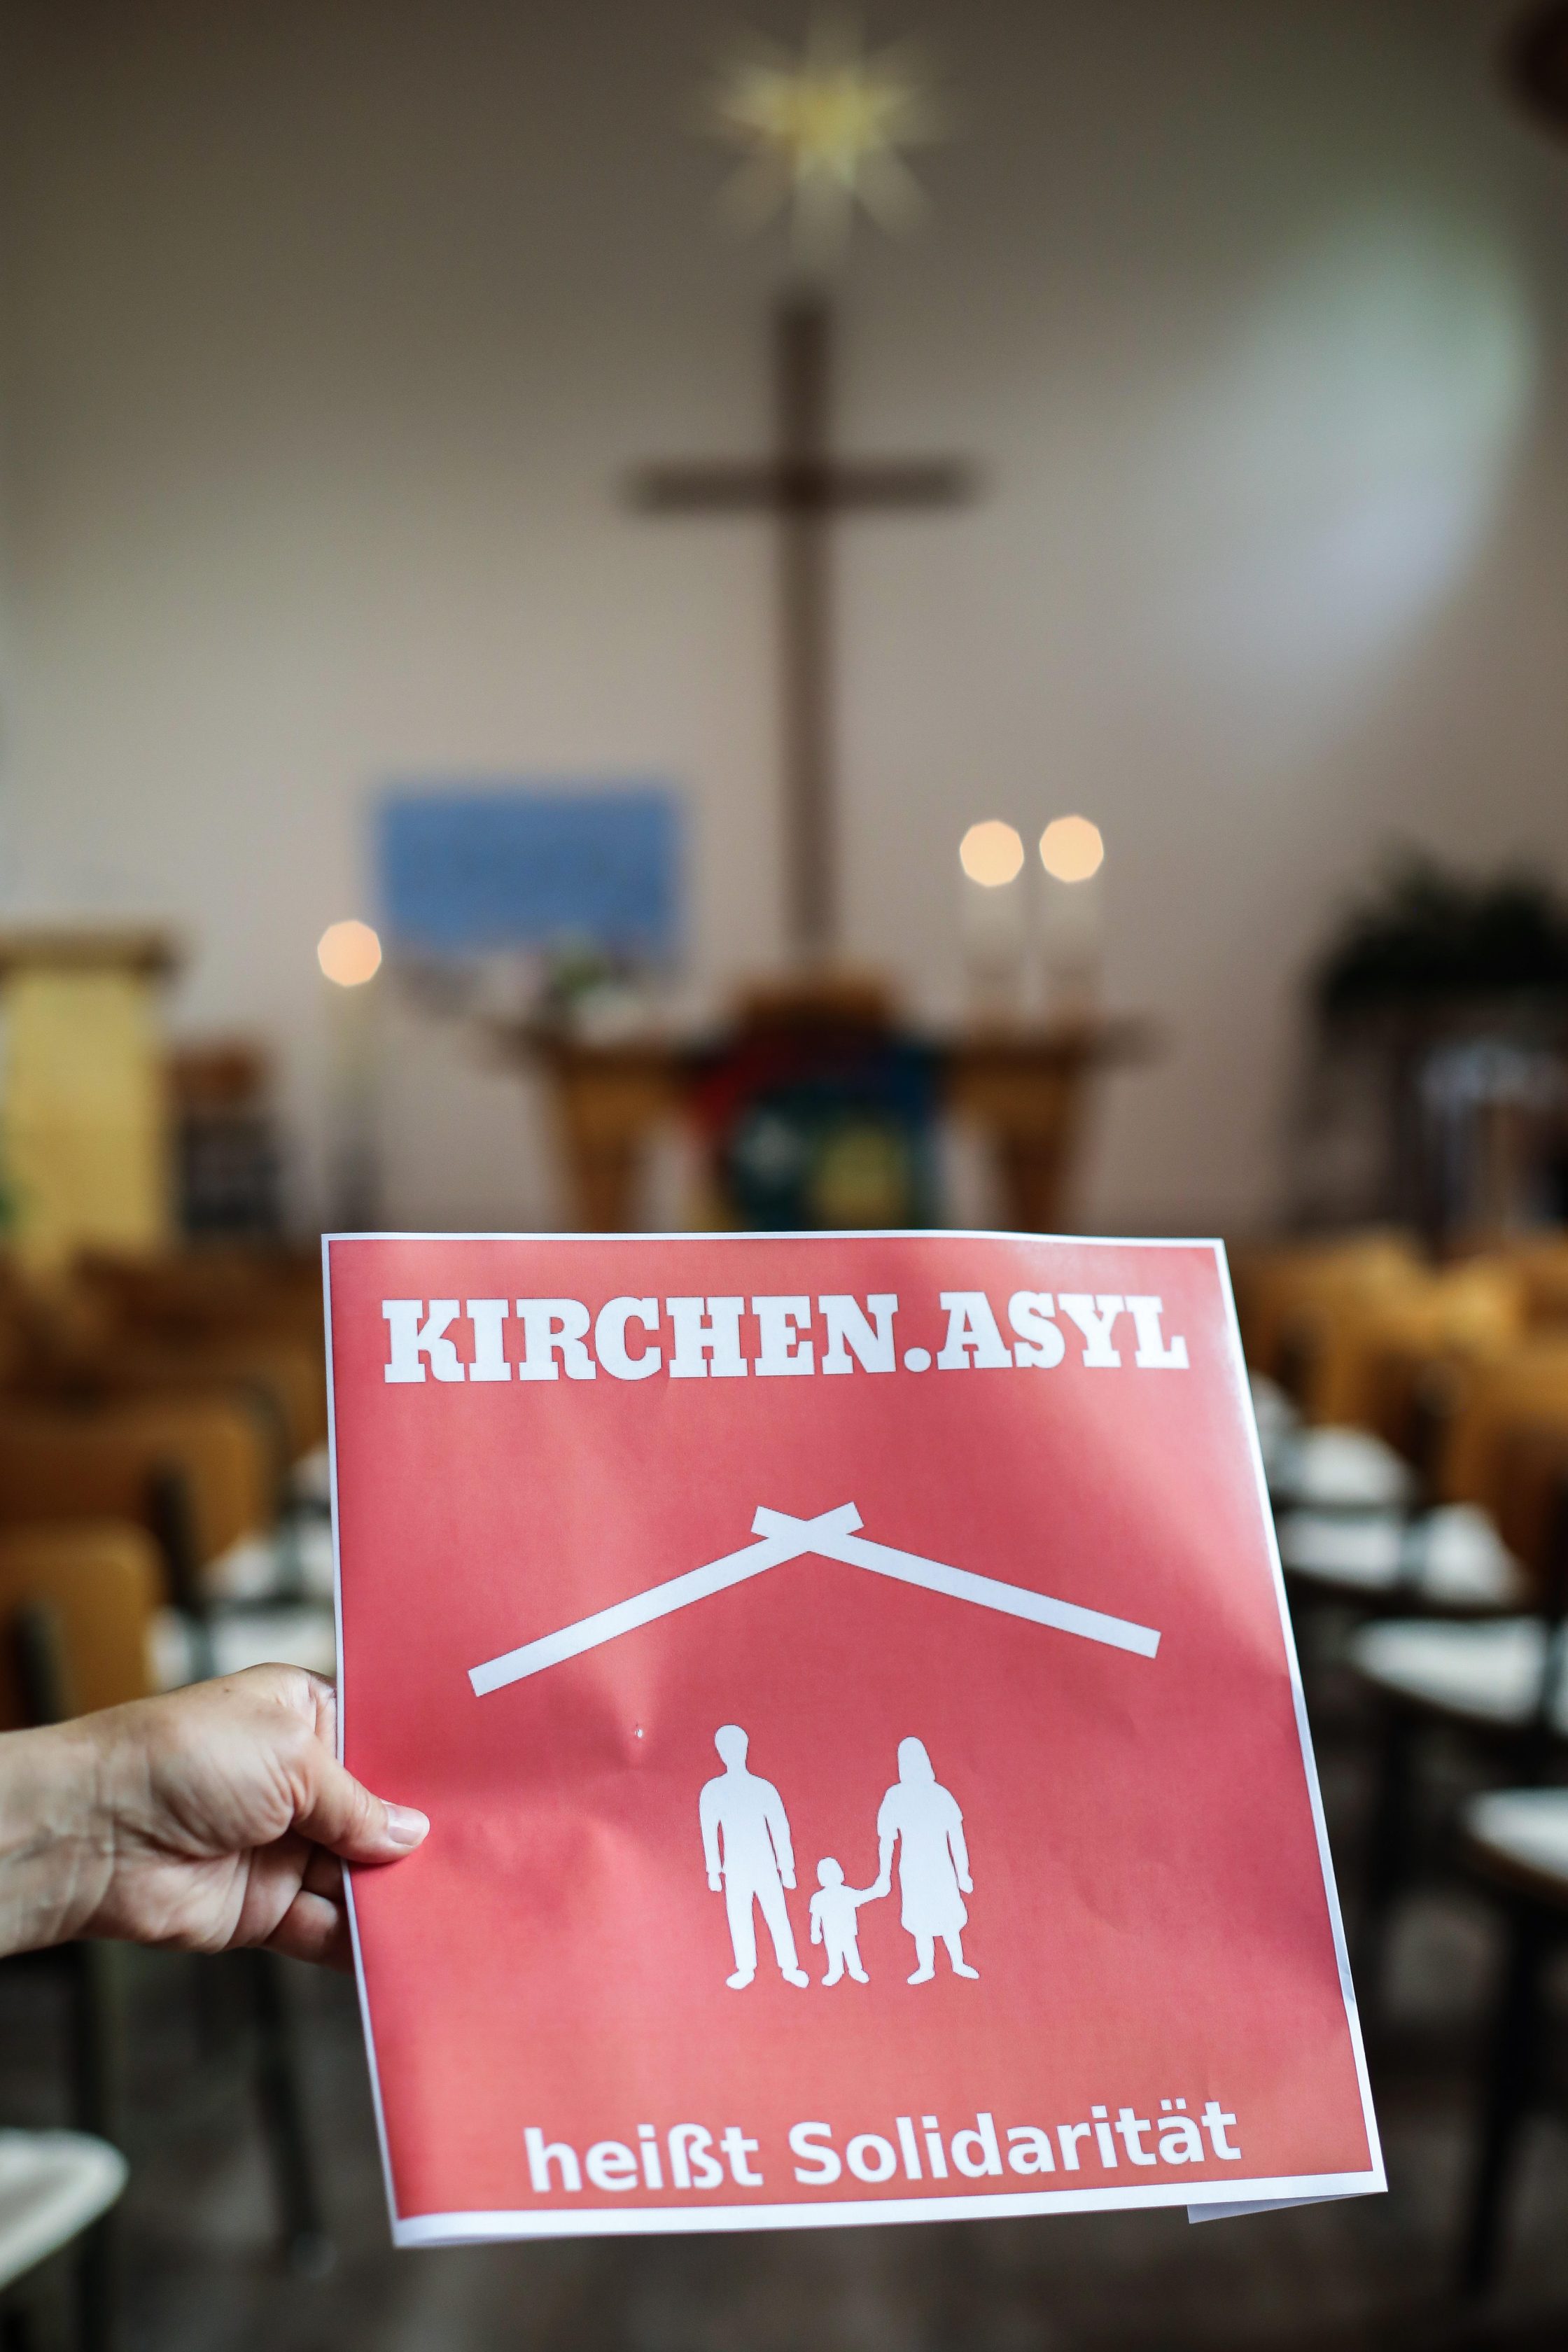 Schild mit der Aufschrift "Kirchenasyl heisst Solidaritaet" in einer evangelischen Kirche